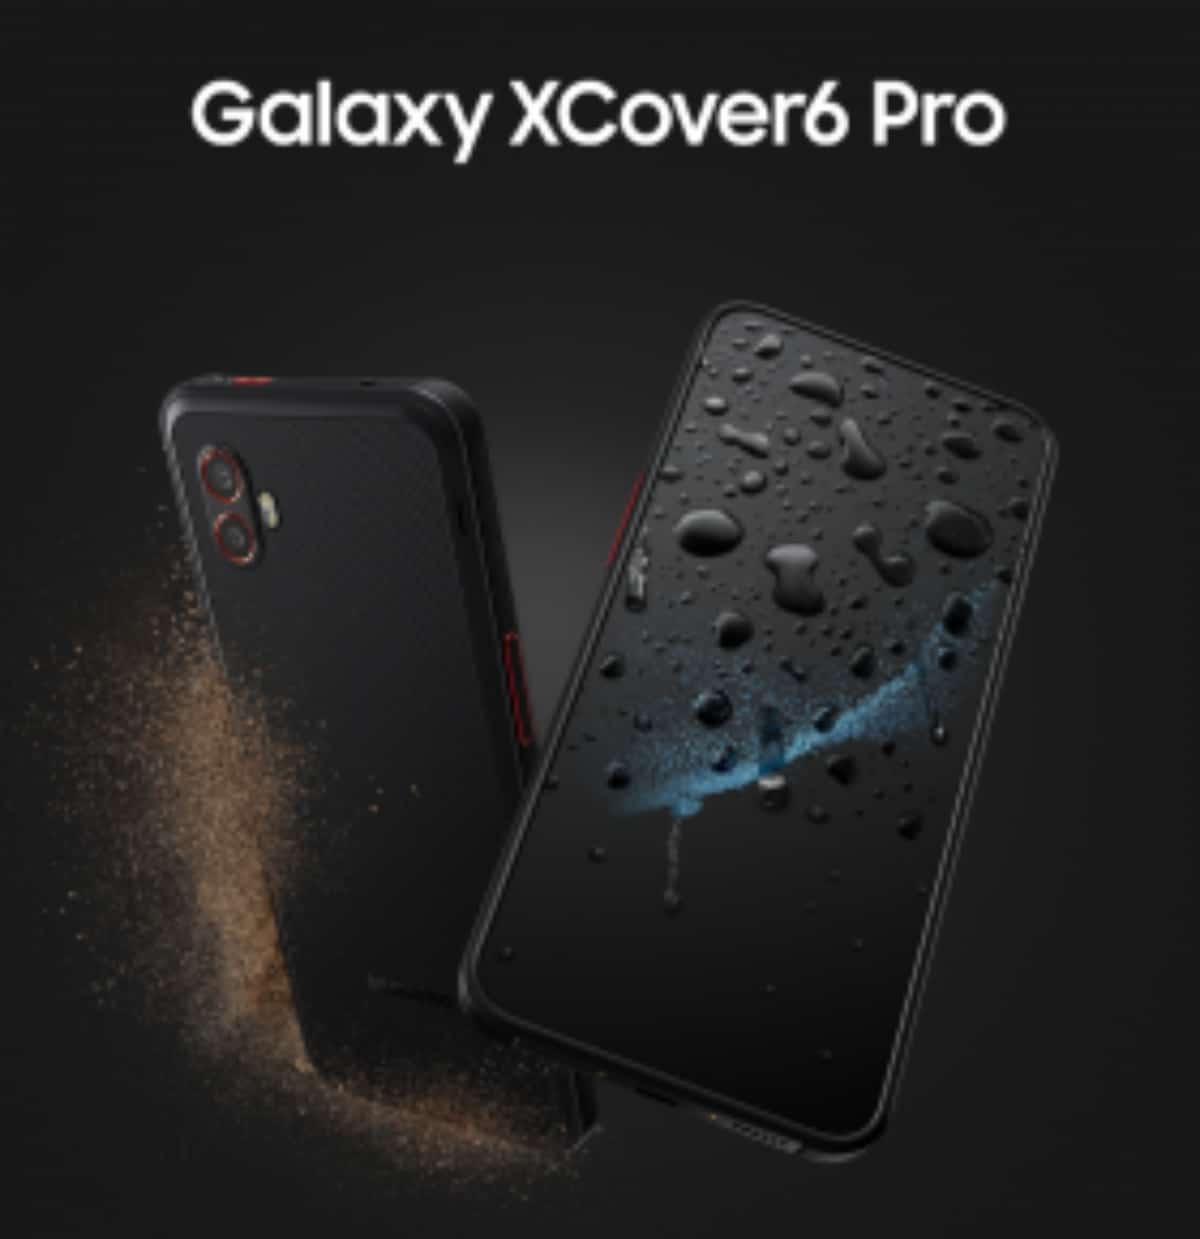 نشر الصور الترويجية لهاتف Samsung Galaxy XCover 6 Pro والكشف عن مواصفات الجهاز قبل الإطلاق